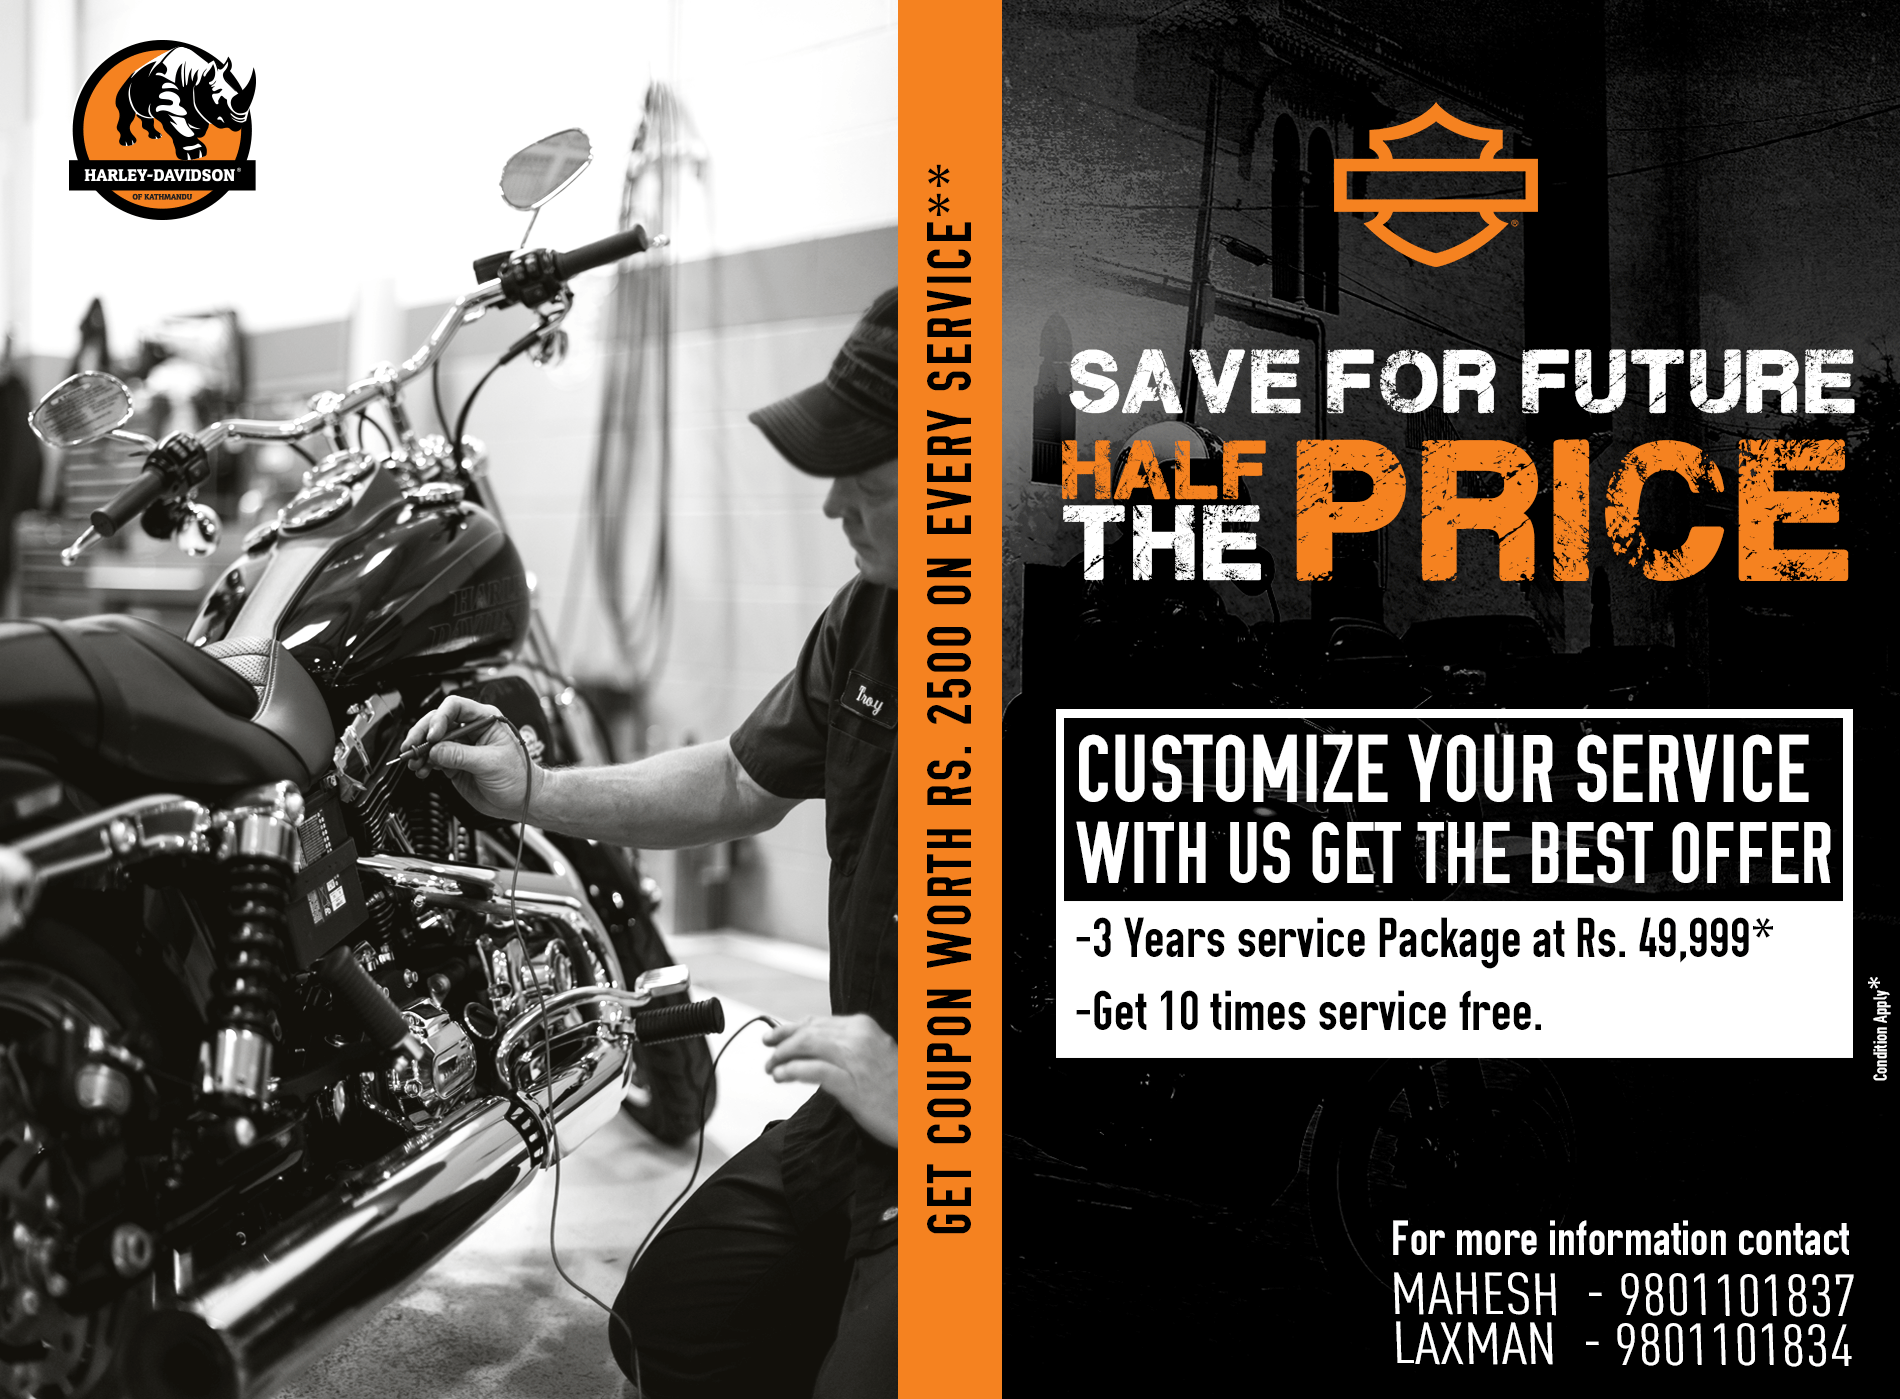 Harley Davidson Service Package Offer!